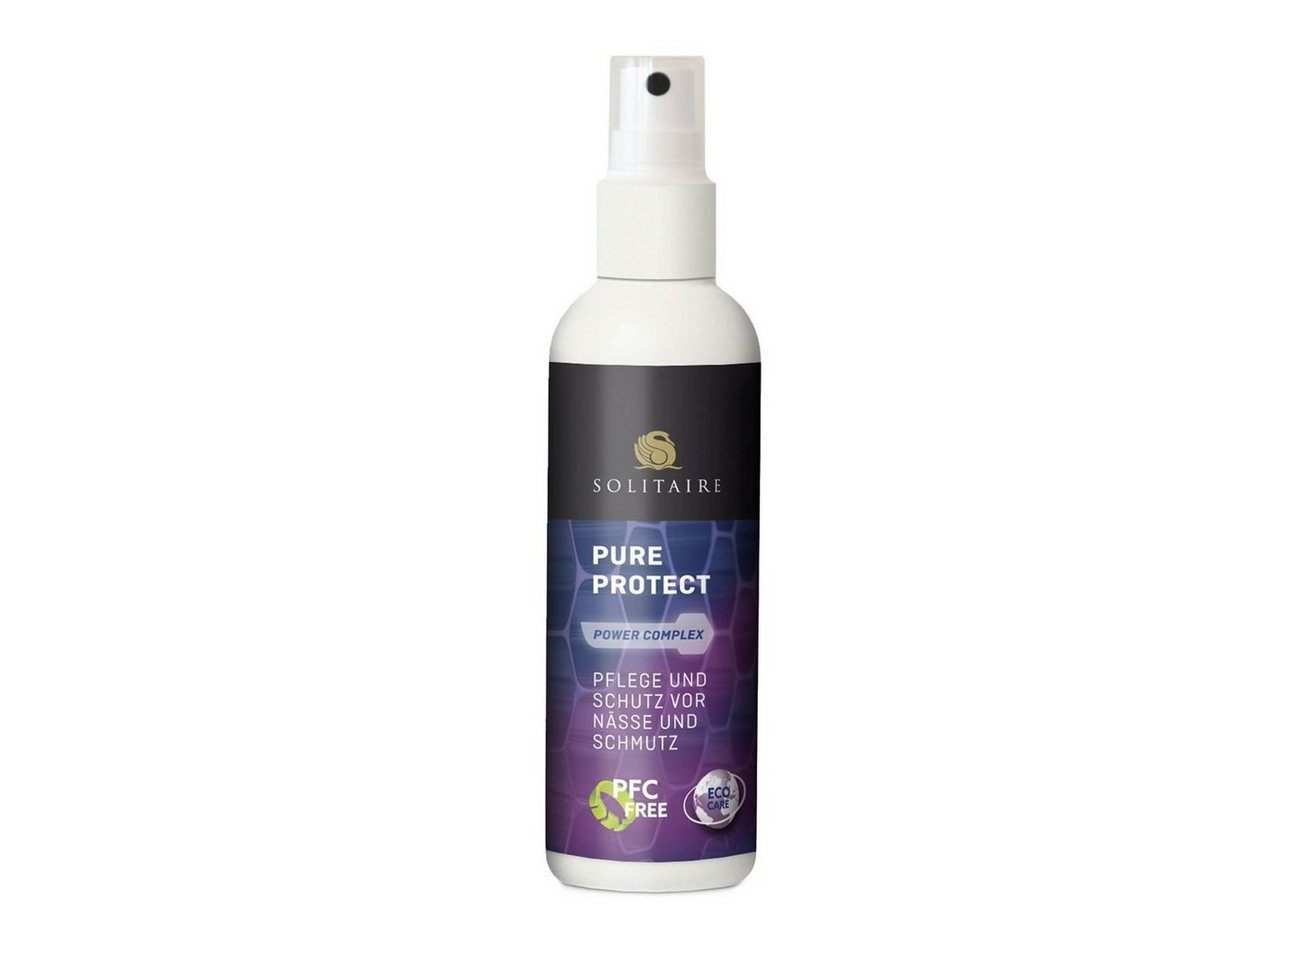 Solitaire Eco Care - Pure Protect - für puren Schutz vor Nässe und Schmutz! Schuh-Imprägnierspray von Solitaire